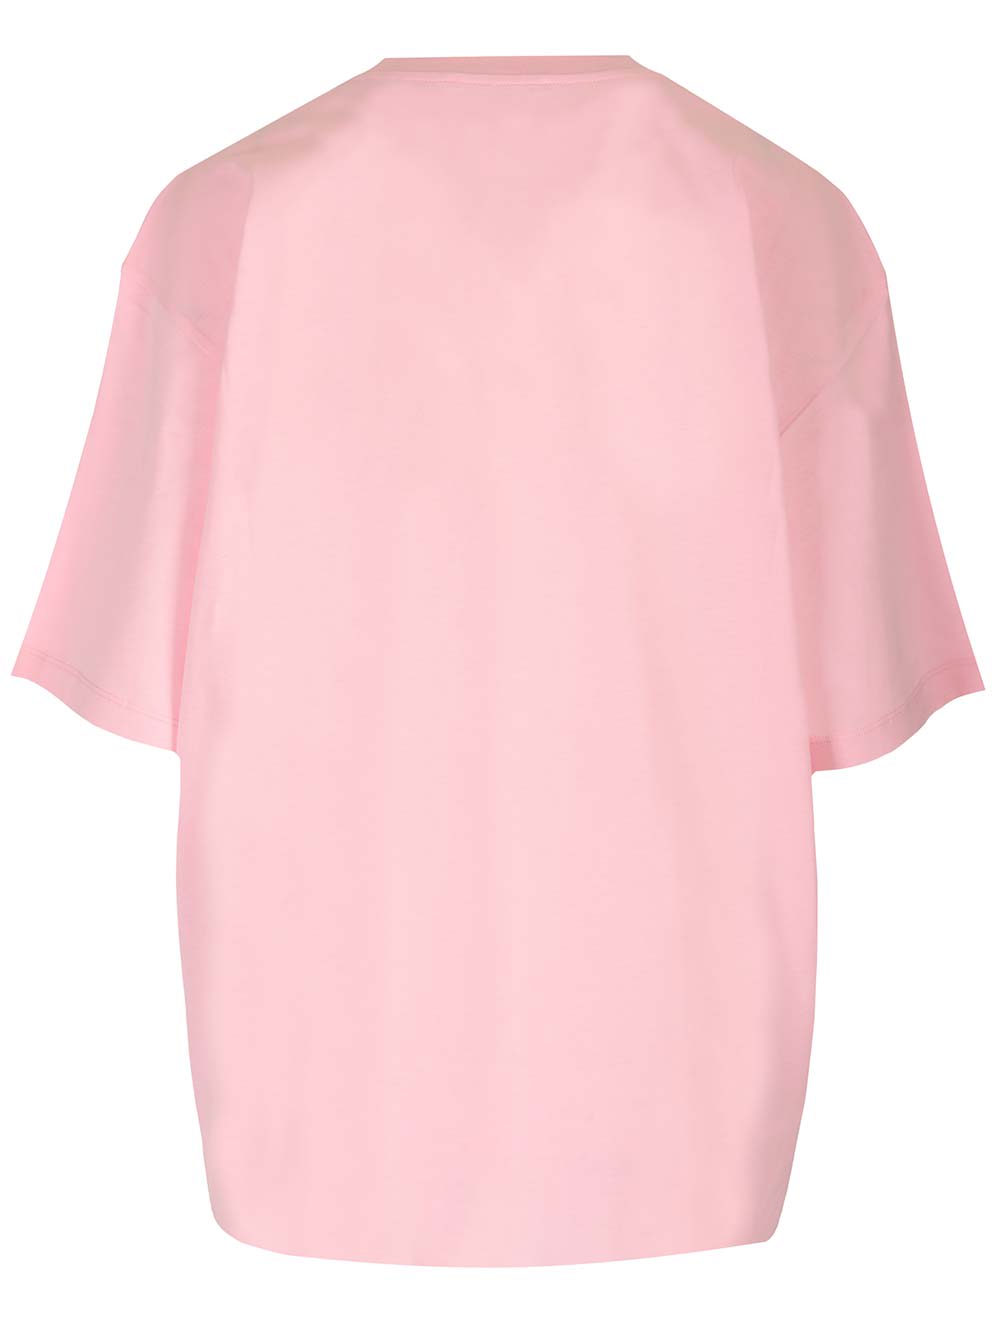 Shop Marni Oversized T-shirt In Rosa